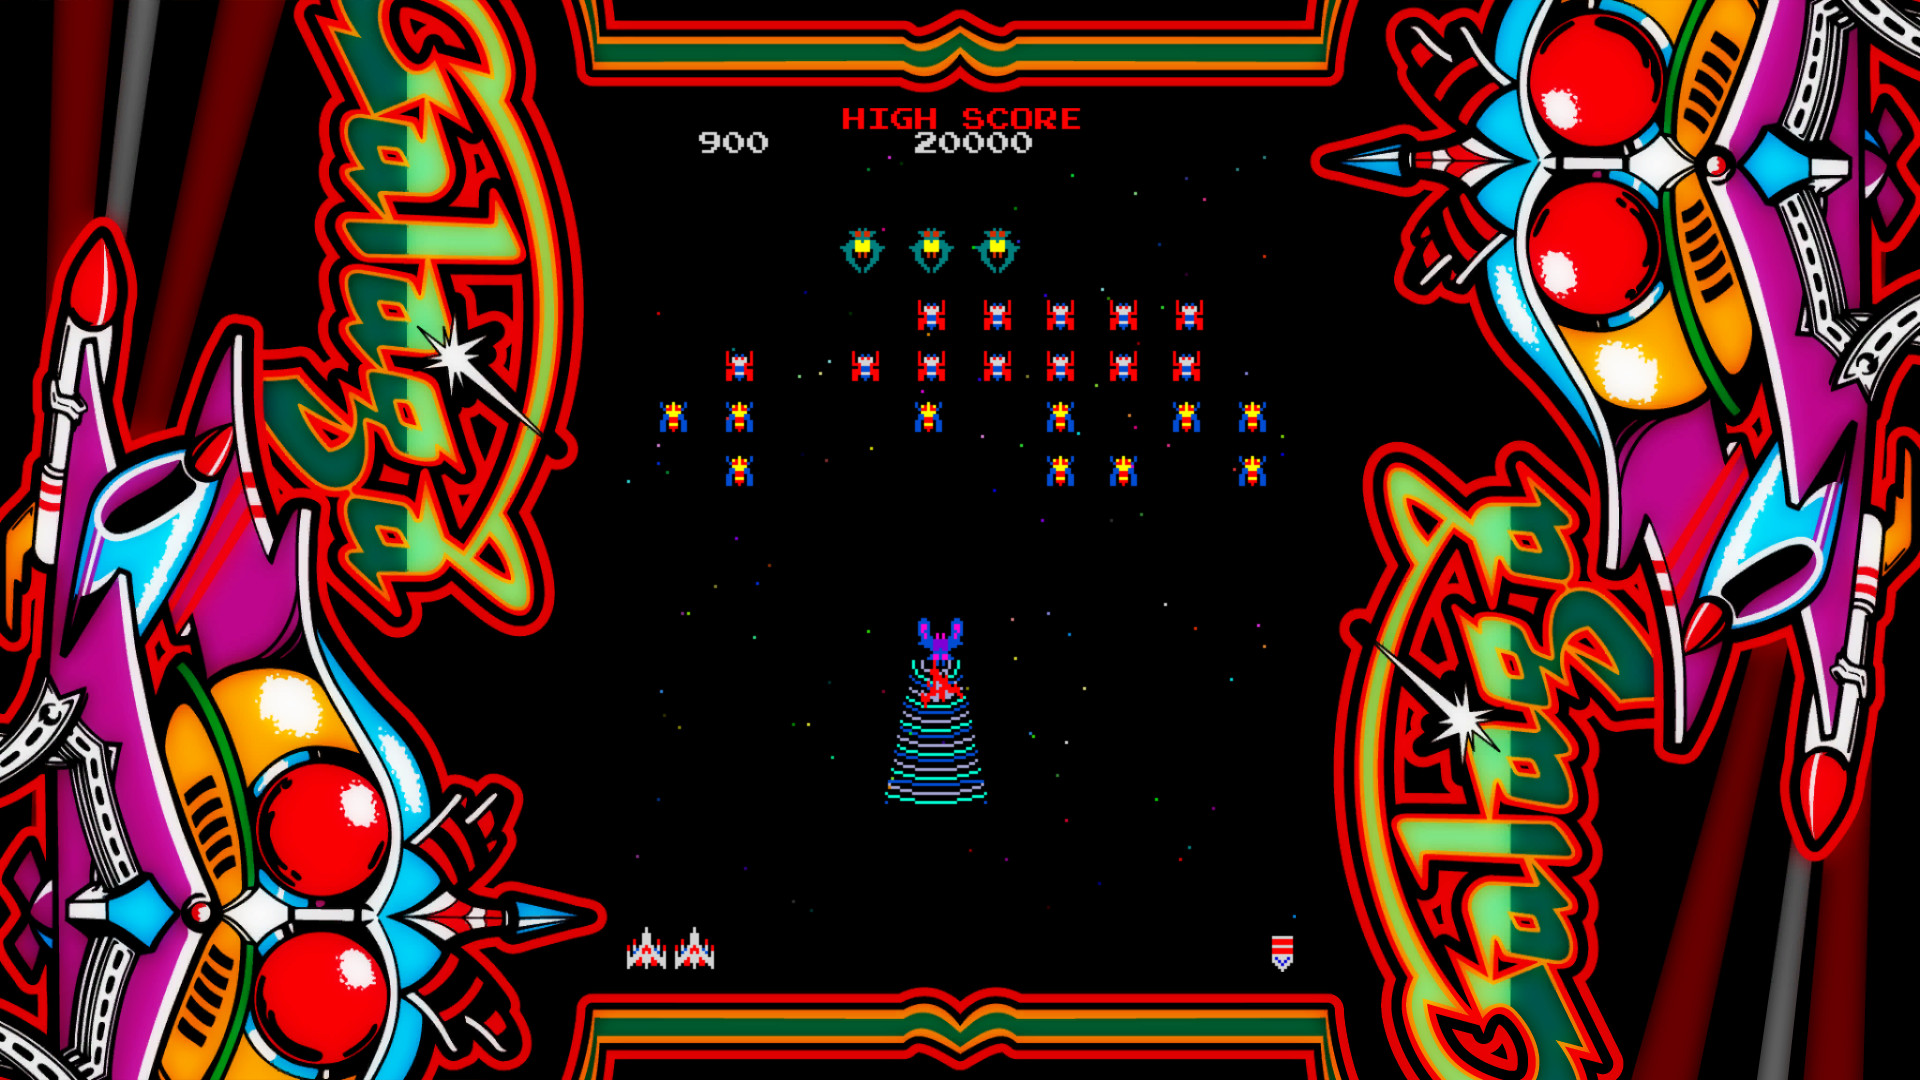 galaga arcade game download free